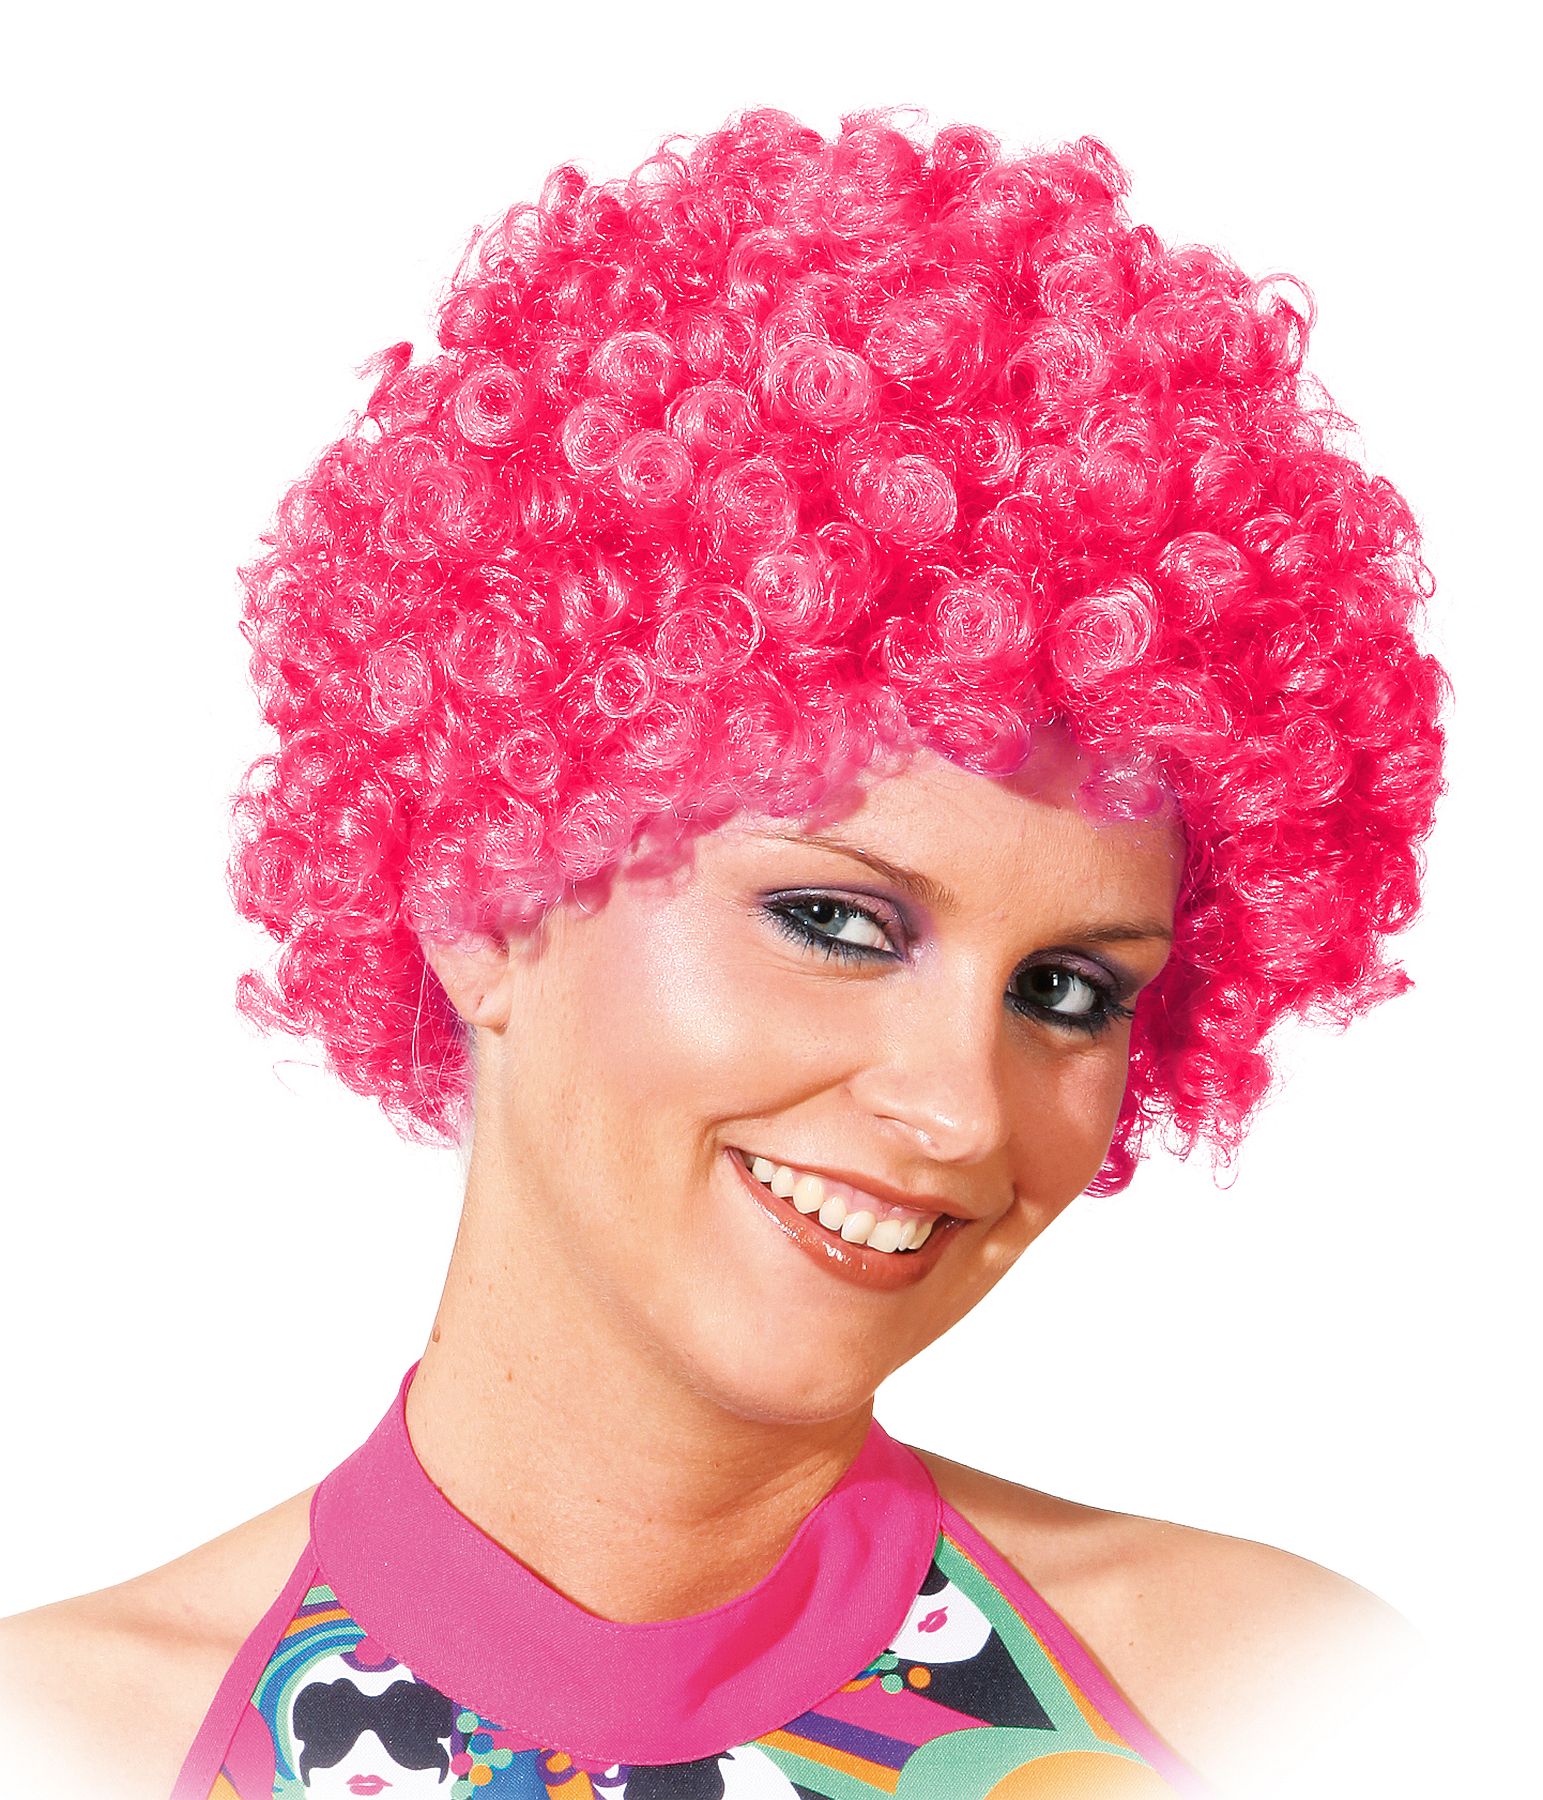 Hair, kurze Locke pink